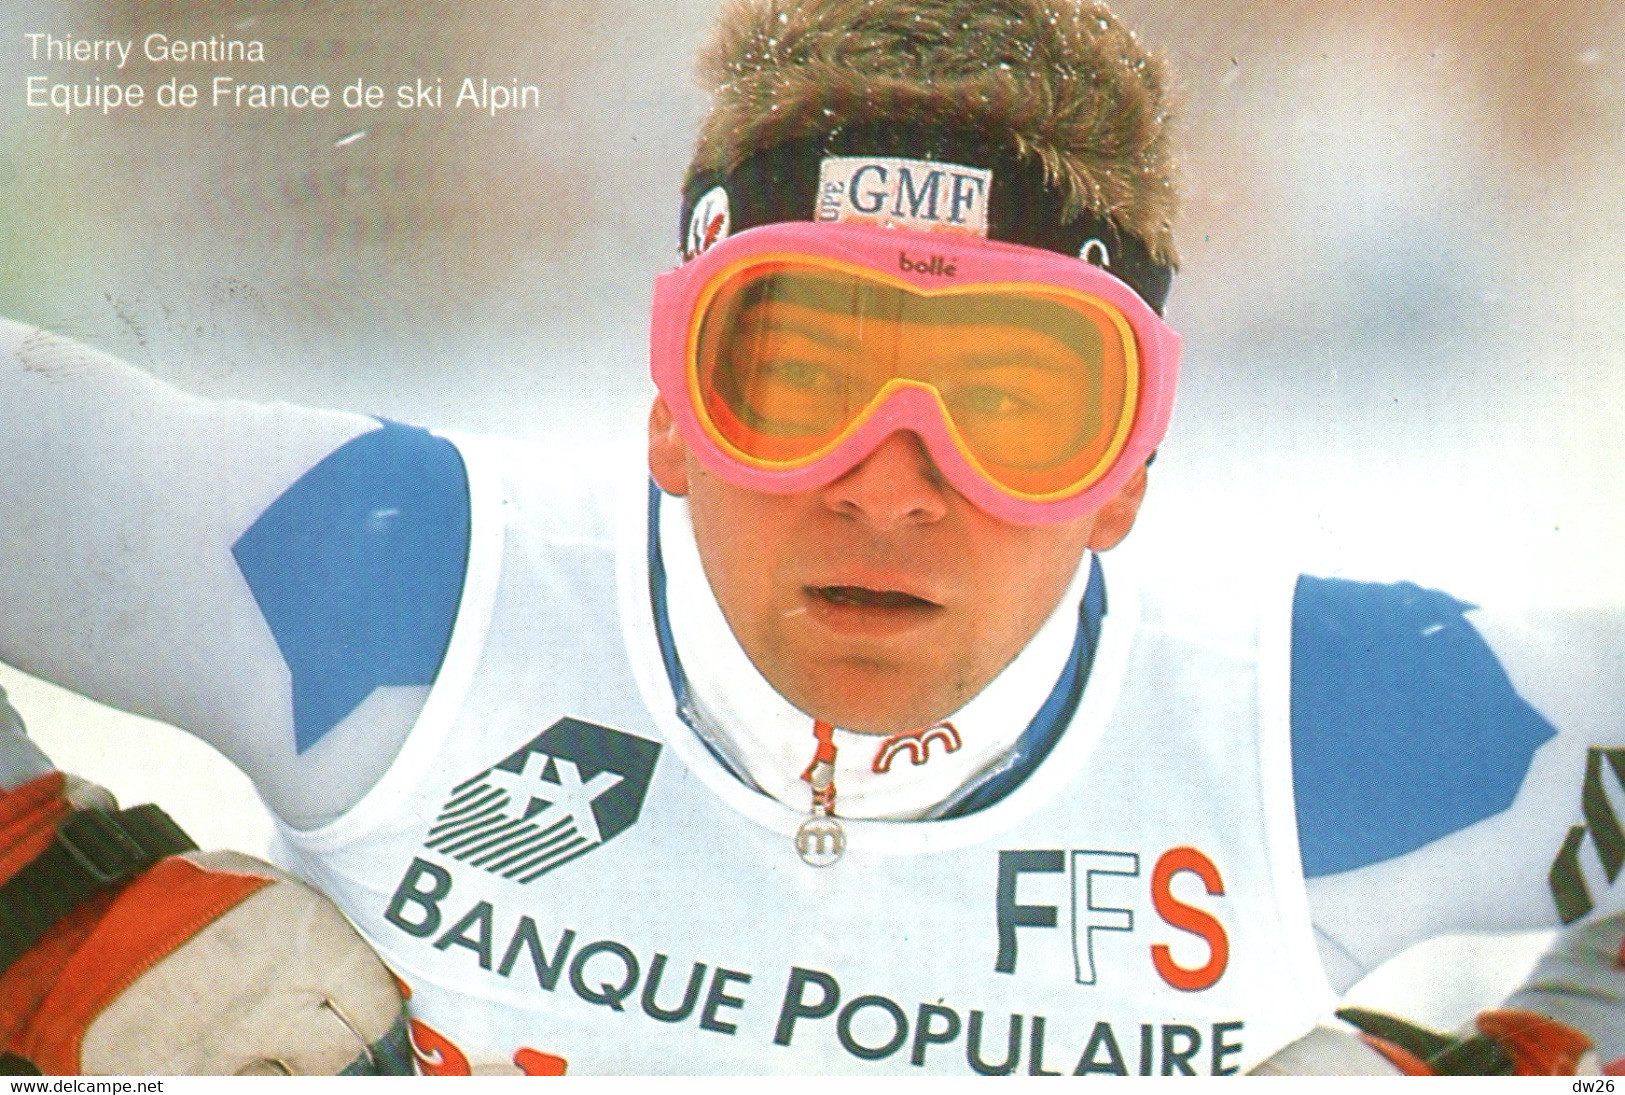 Thierry Gentina - Equipe De France De Ski Alpin (Descente) - Publicité Banque Populaire 1992 - Martial